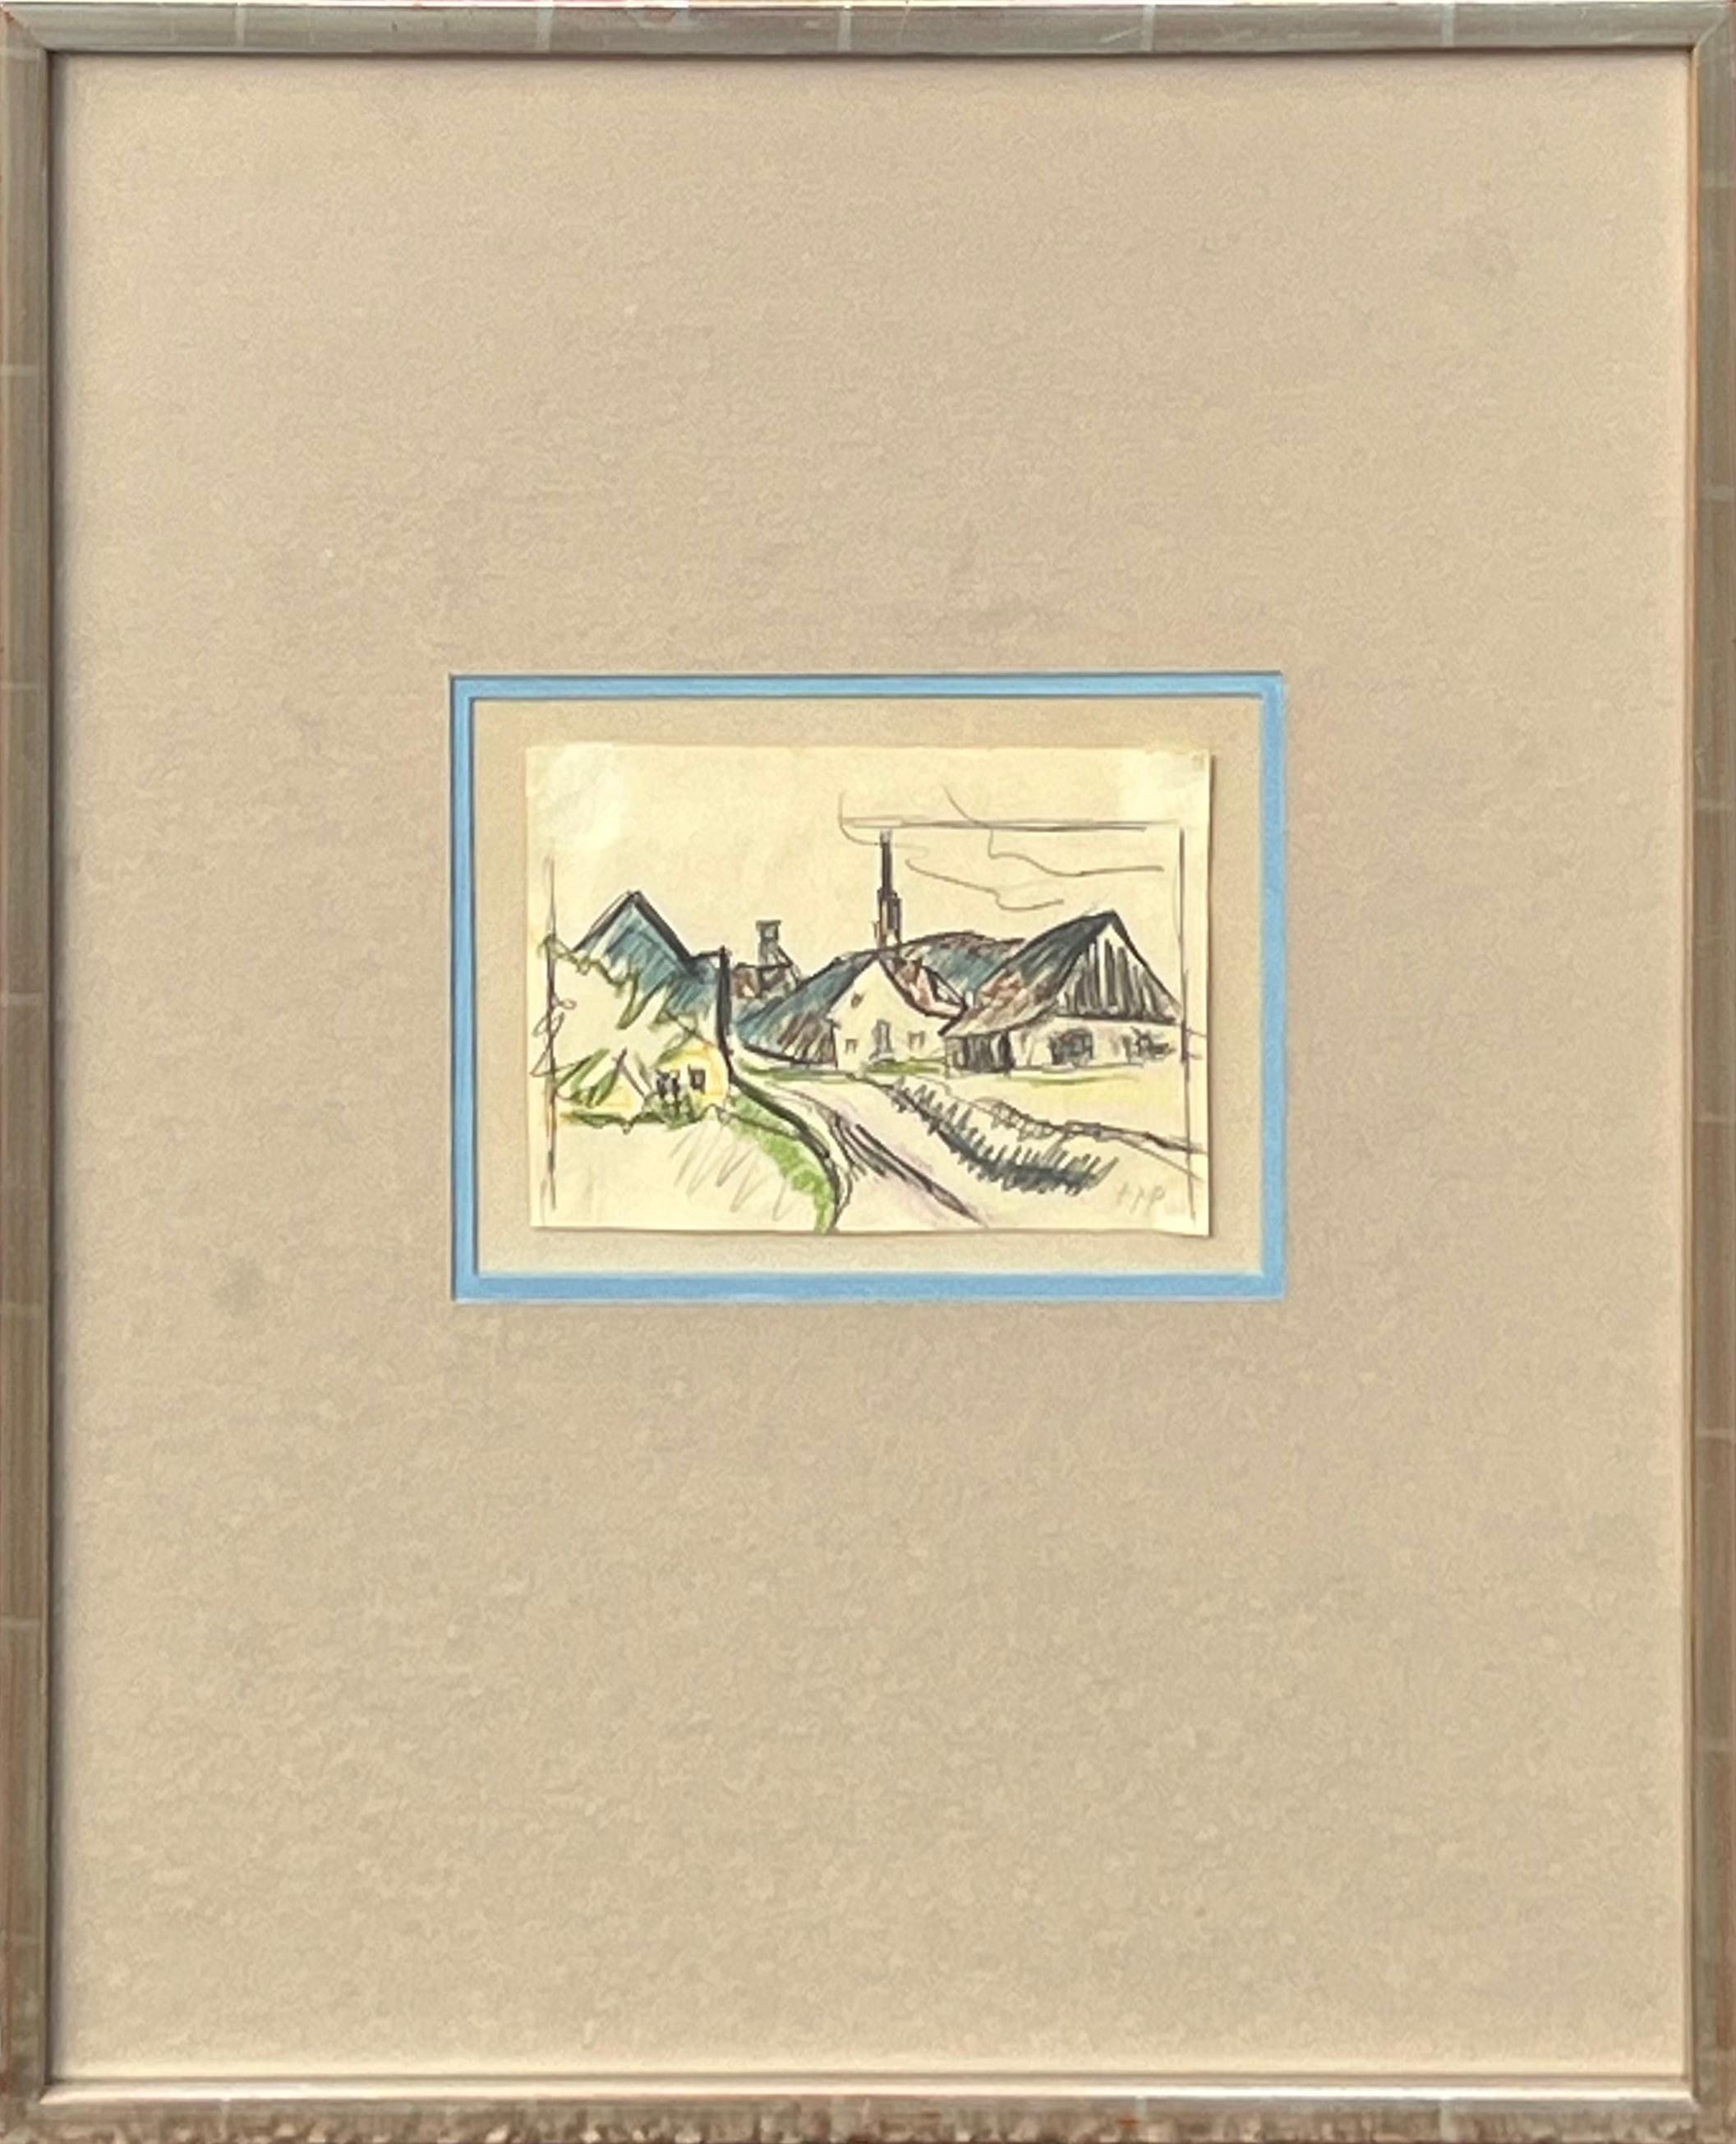 « View of Village », dessin de paysage abstrait gestuel et ancien moderne représentant des maisons 